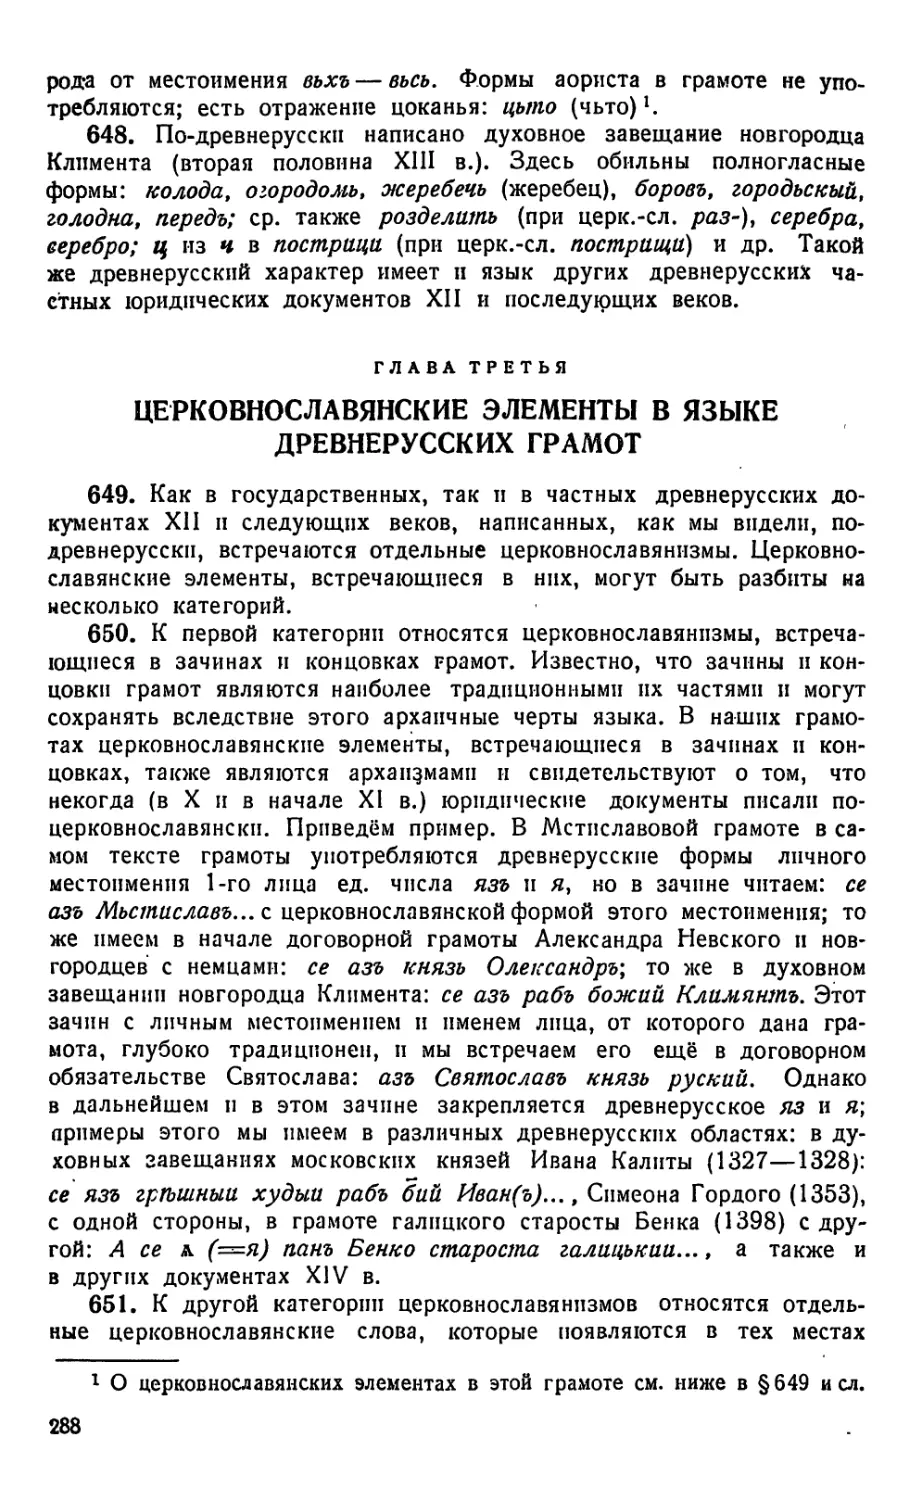 Глава третья. Церковнославянские элементы в языке древнерусских грамот